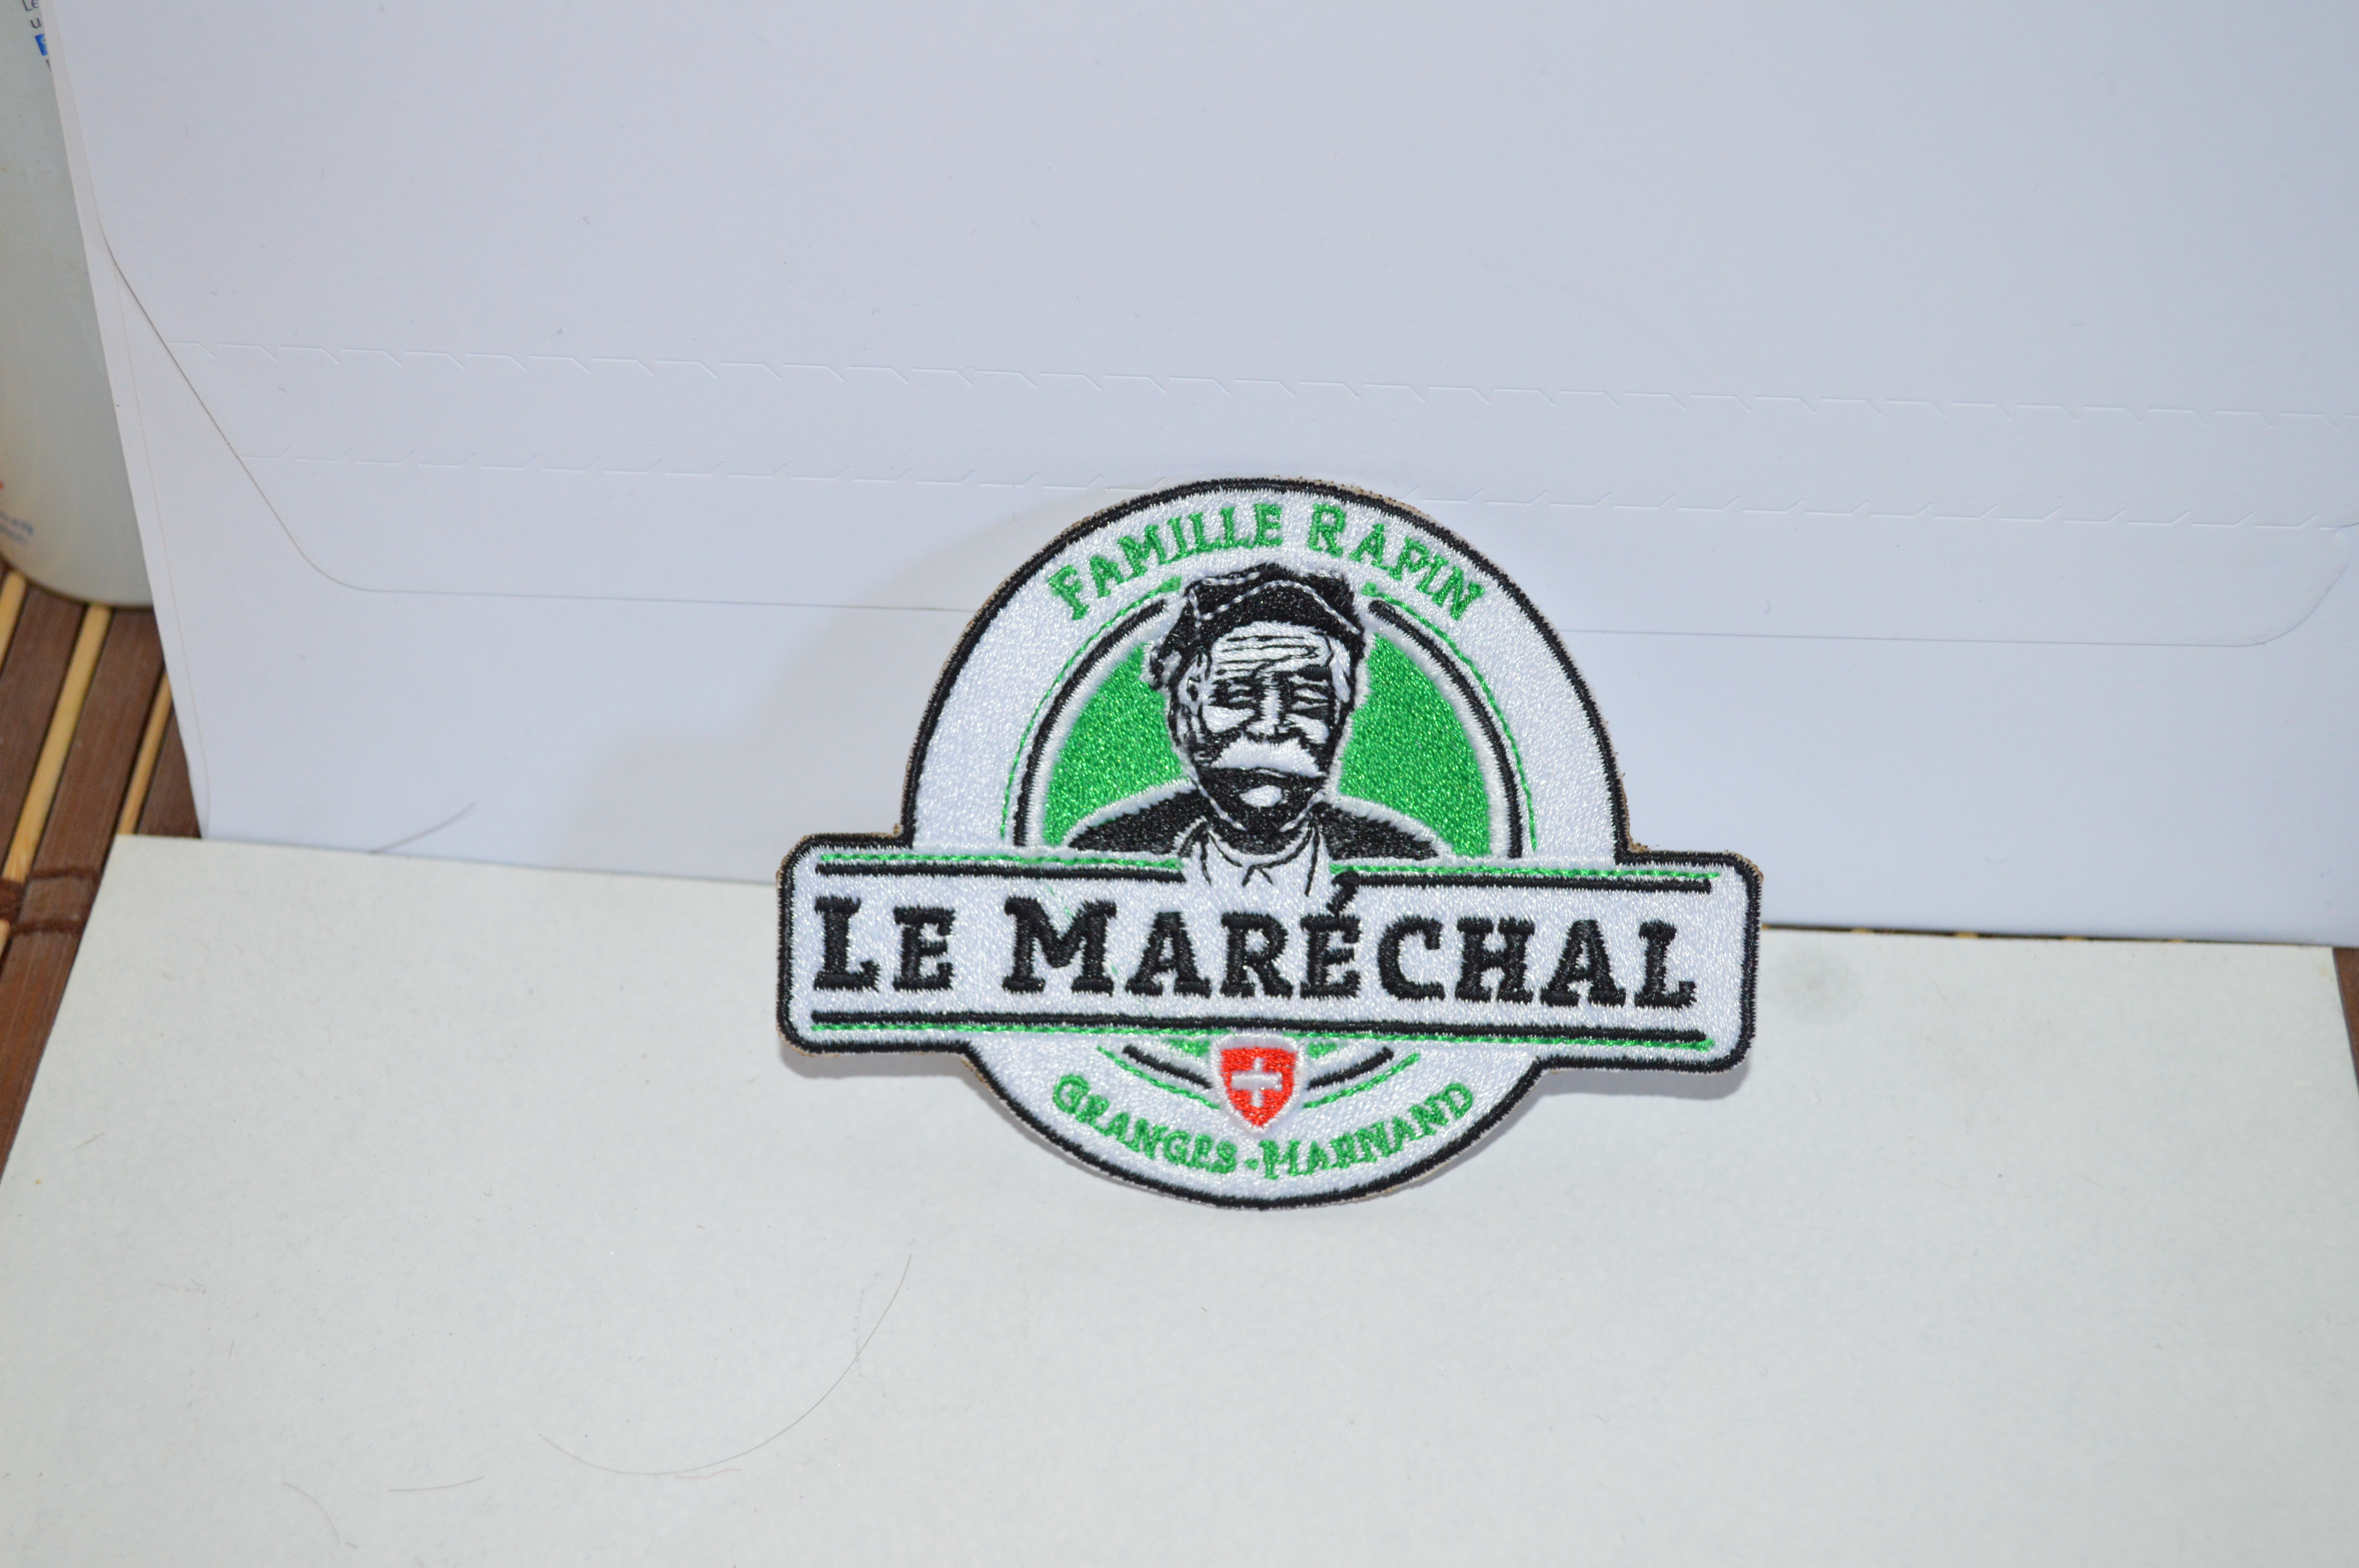 Le Maréchal